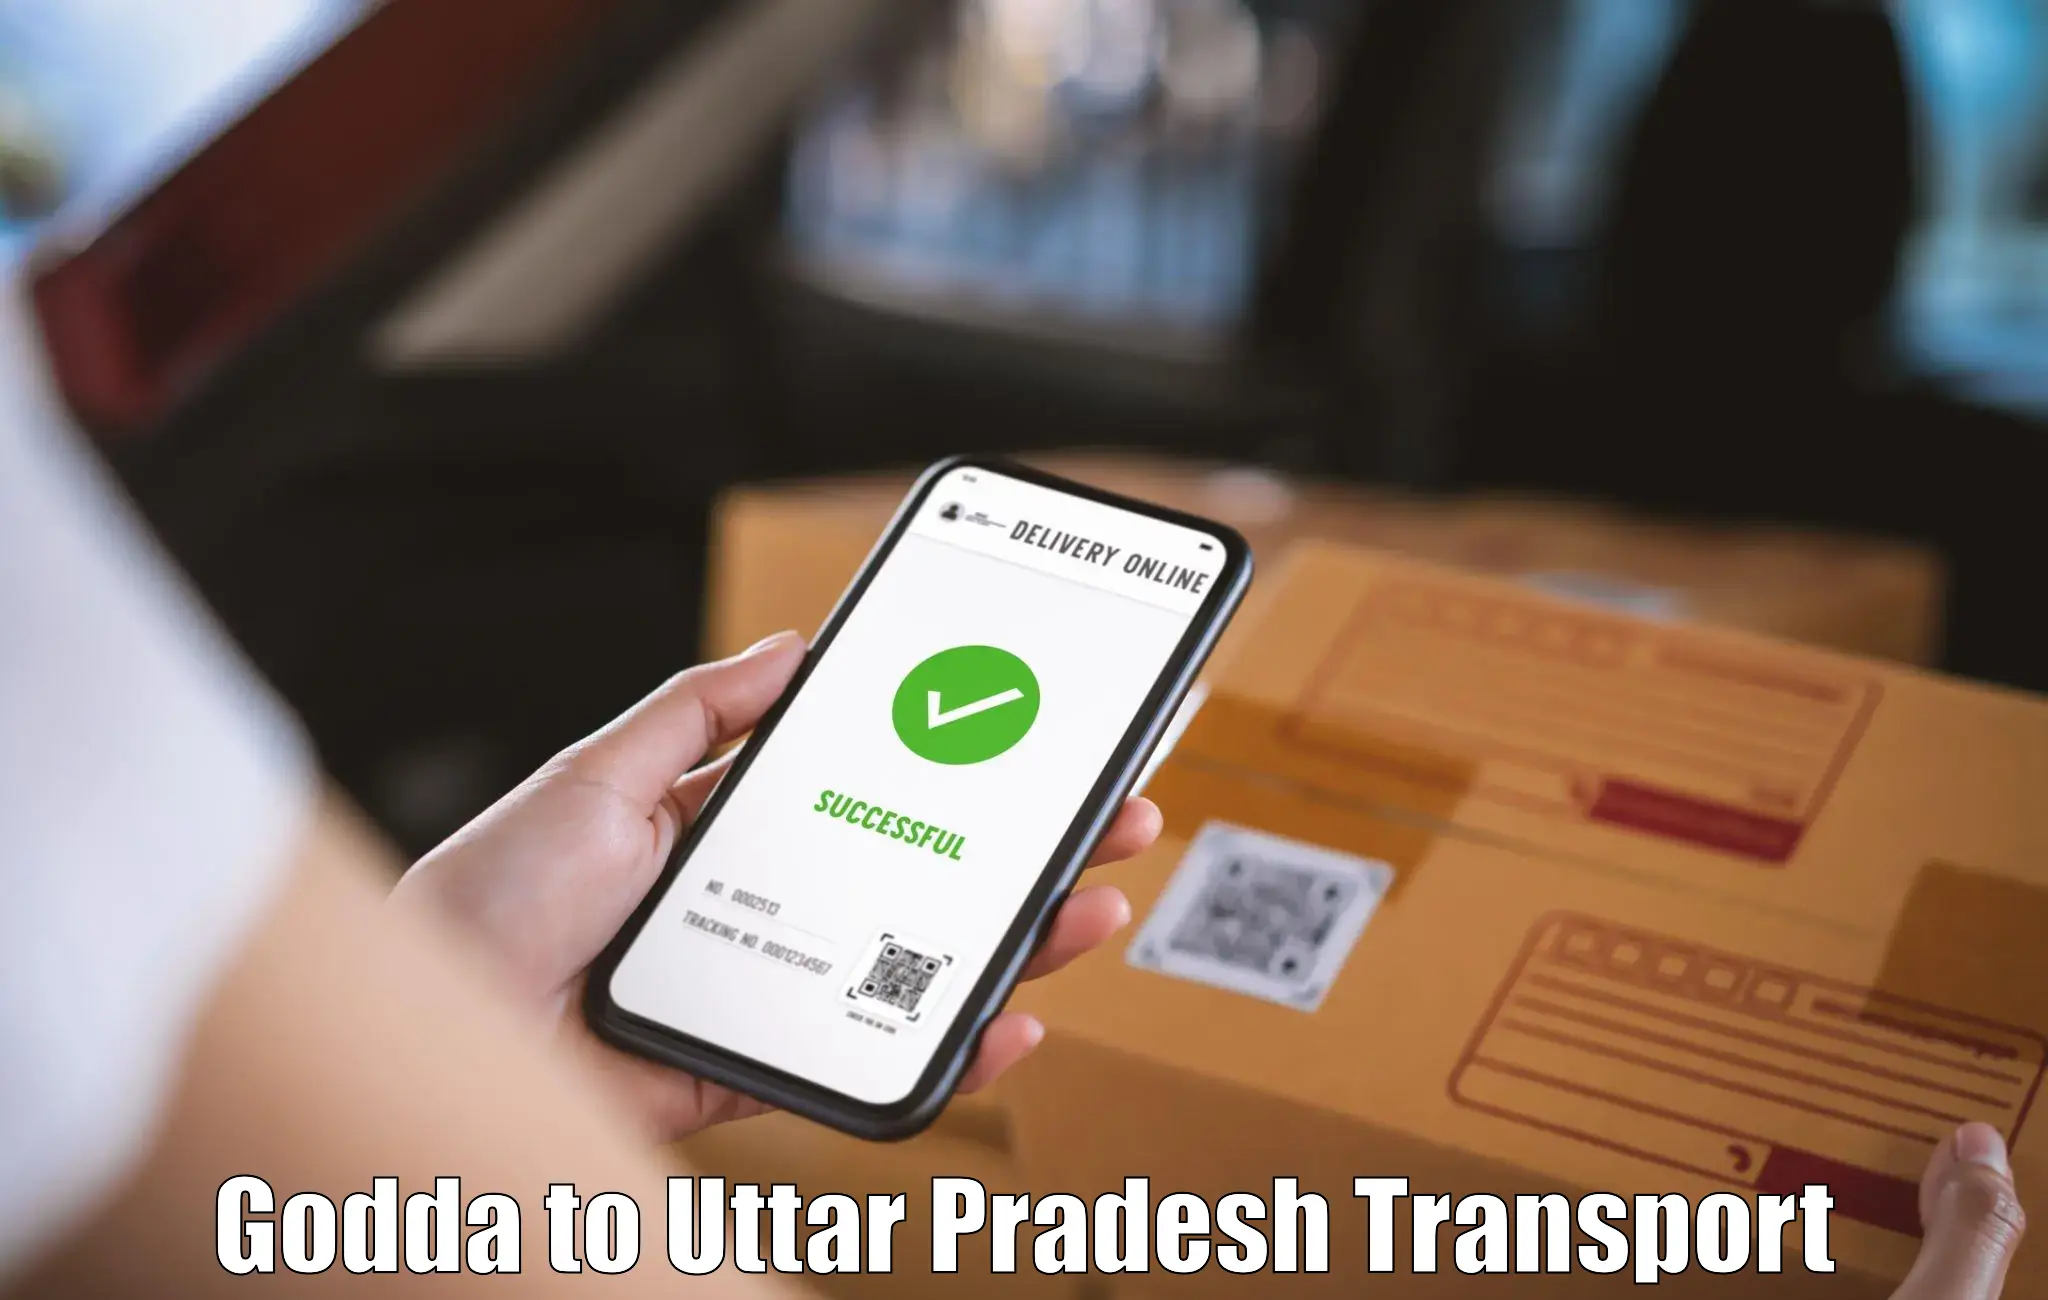 Transport in sharing Godda to Manda